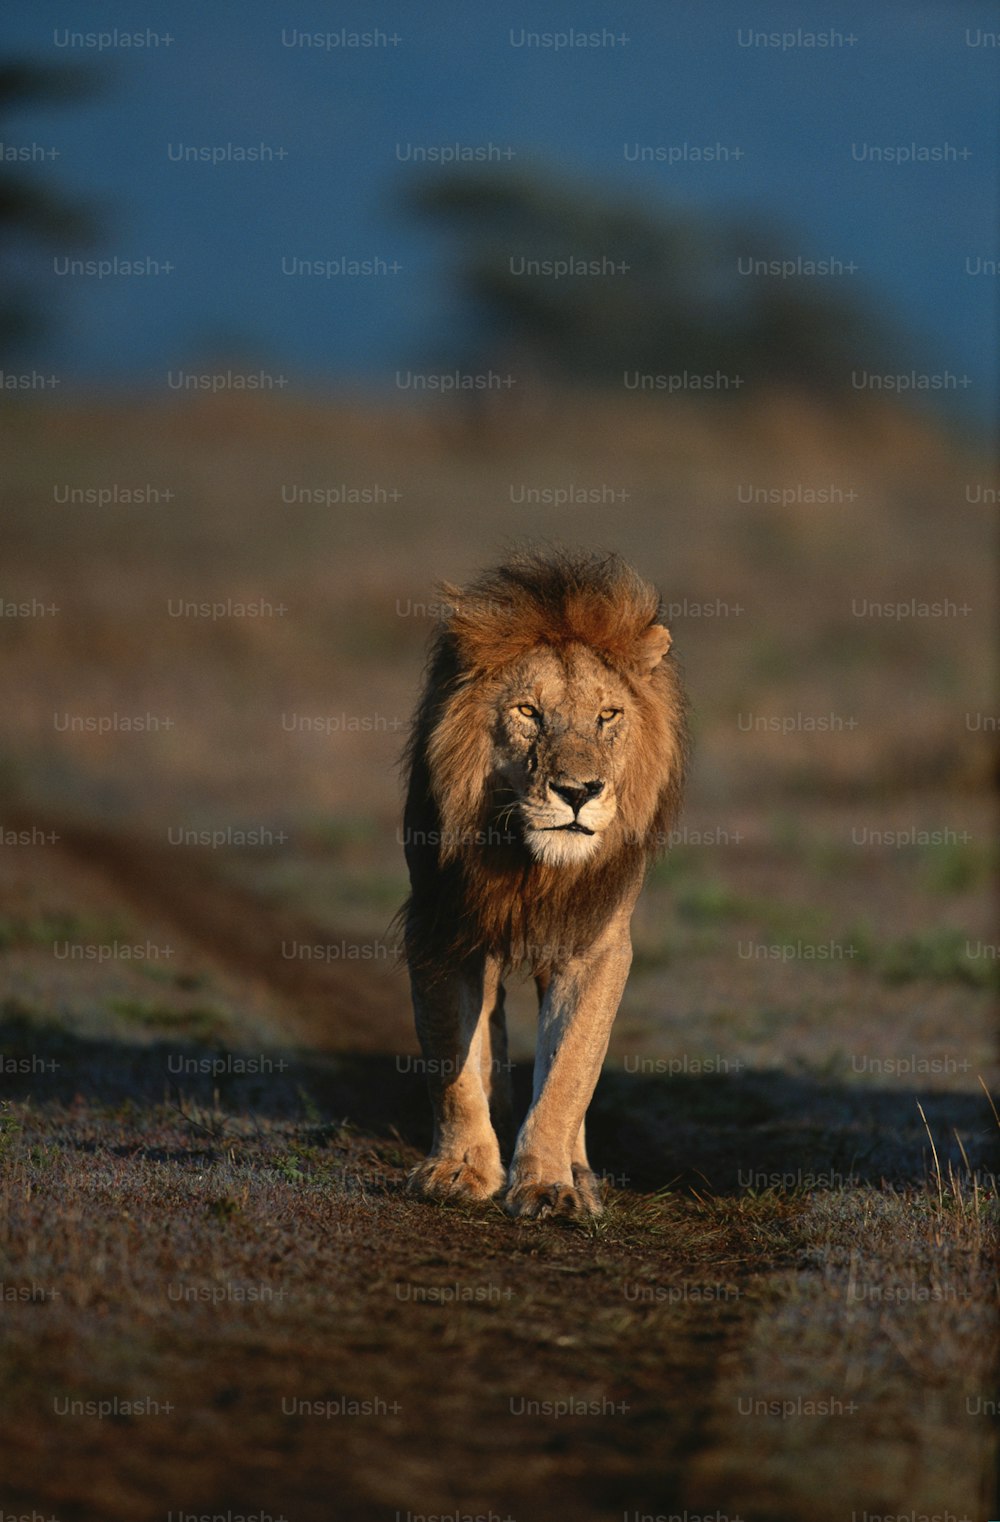 Un lion marchant dans un champ couvert d’herbe